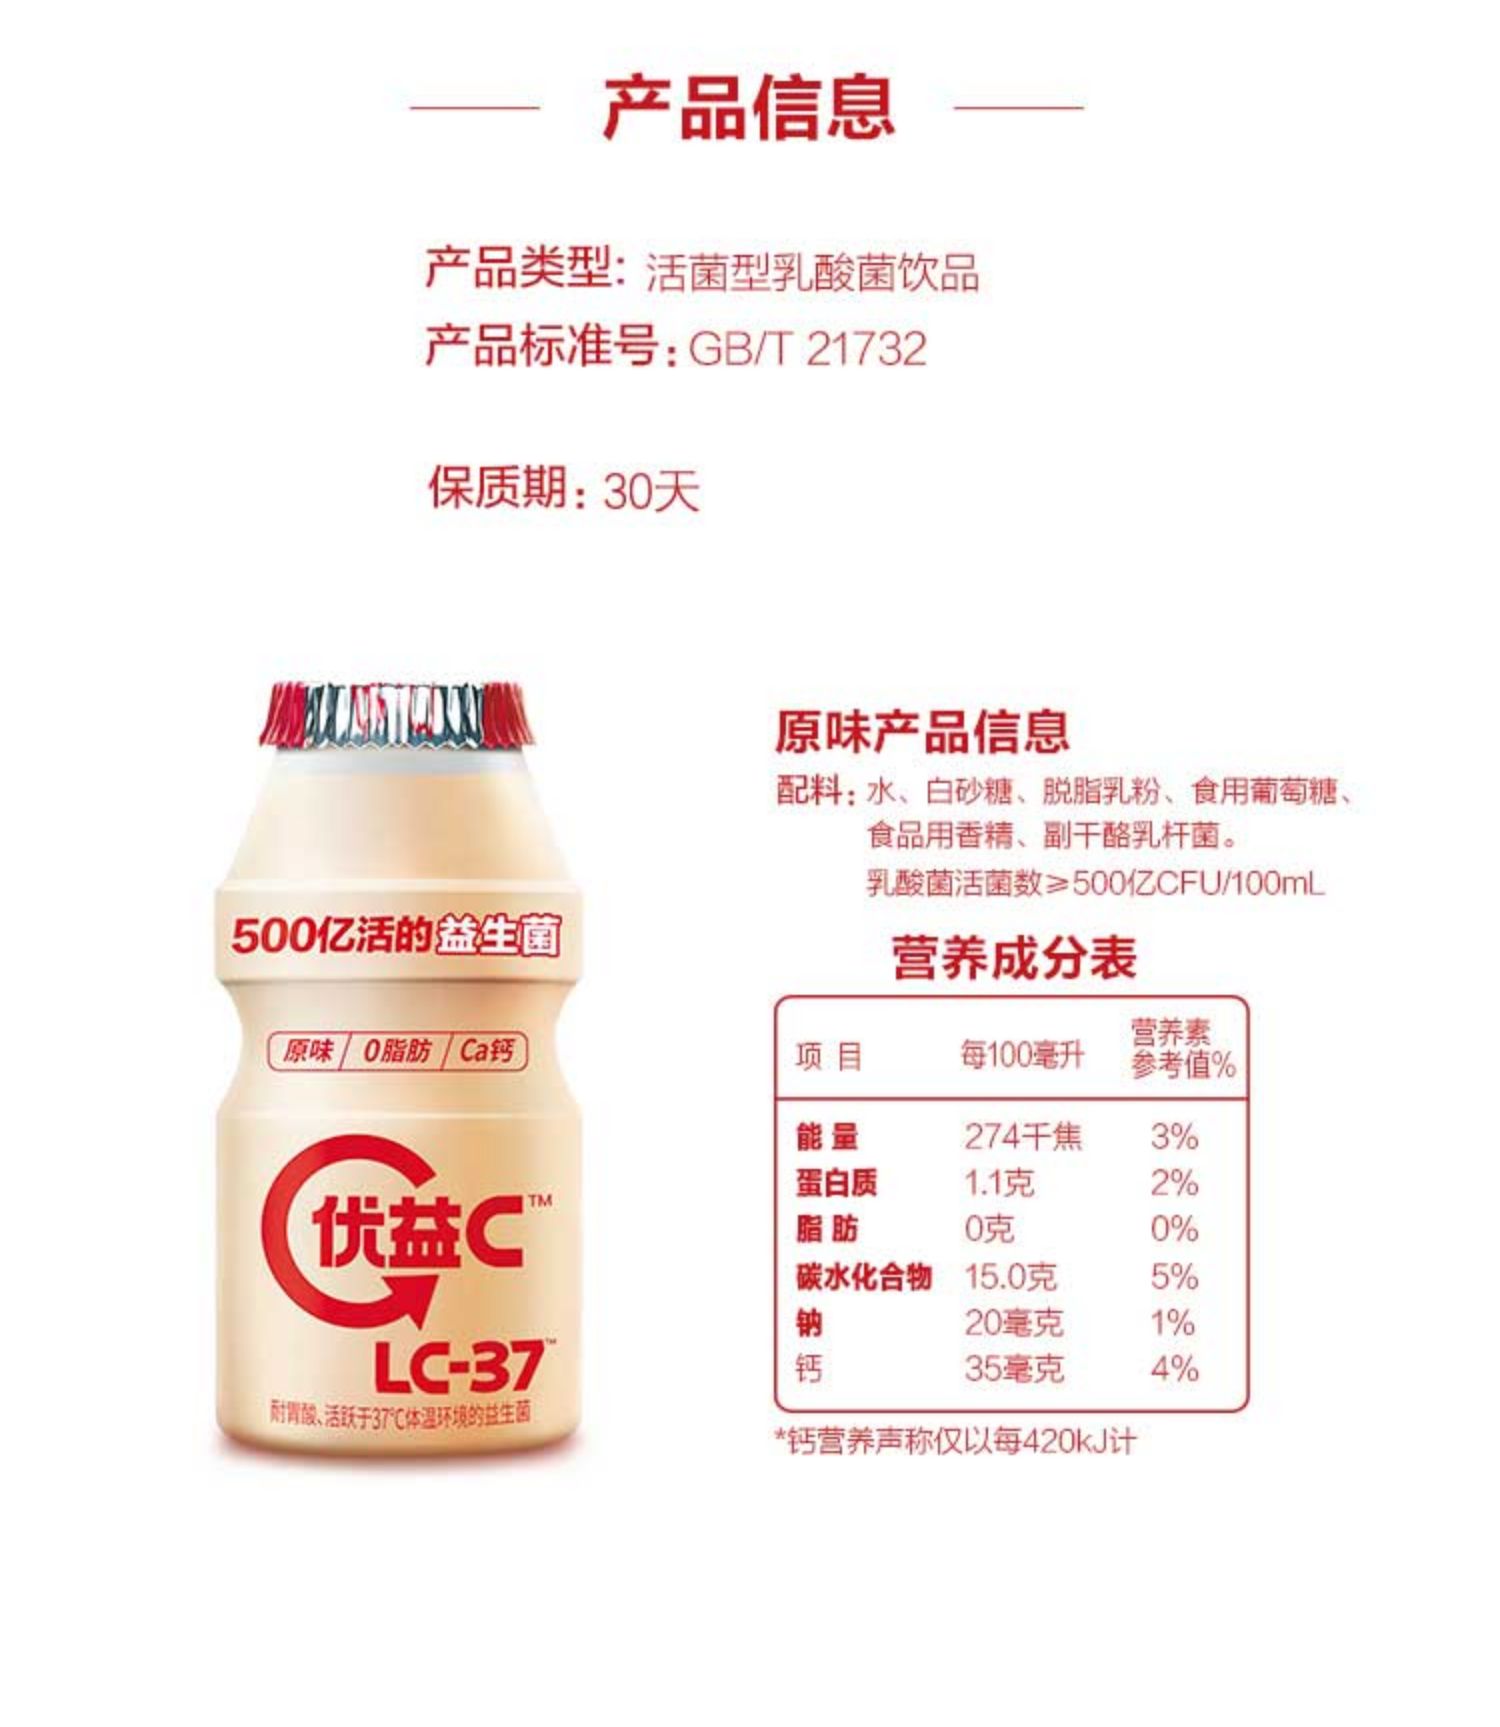 【蒙牛】优益C、LC-37活性乳酸菌饮品30瓶